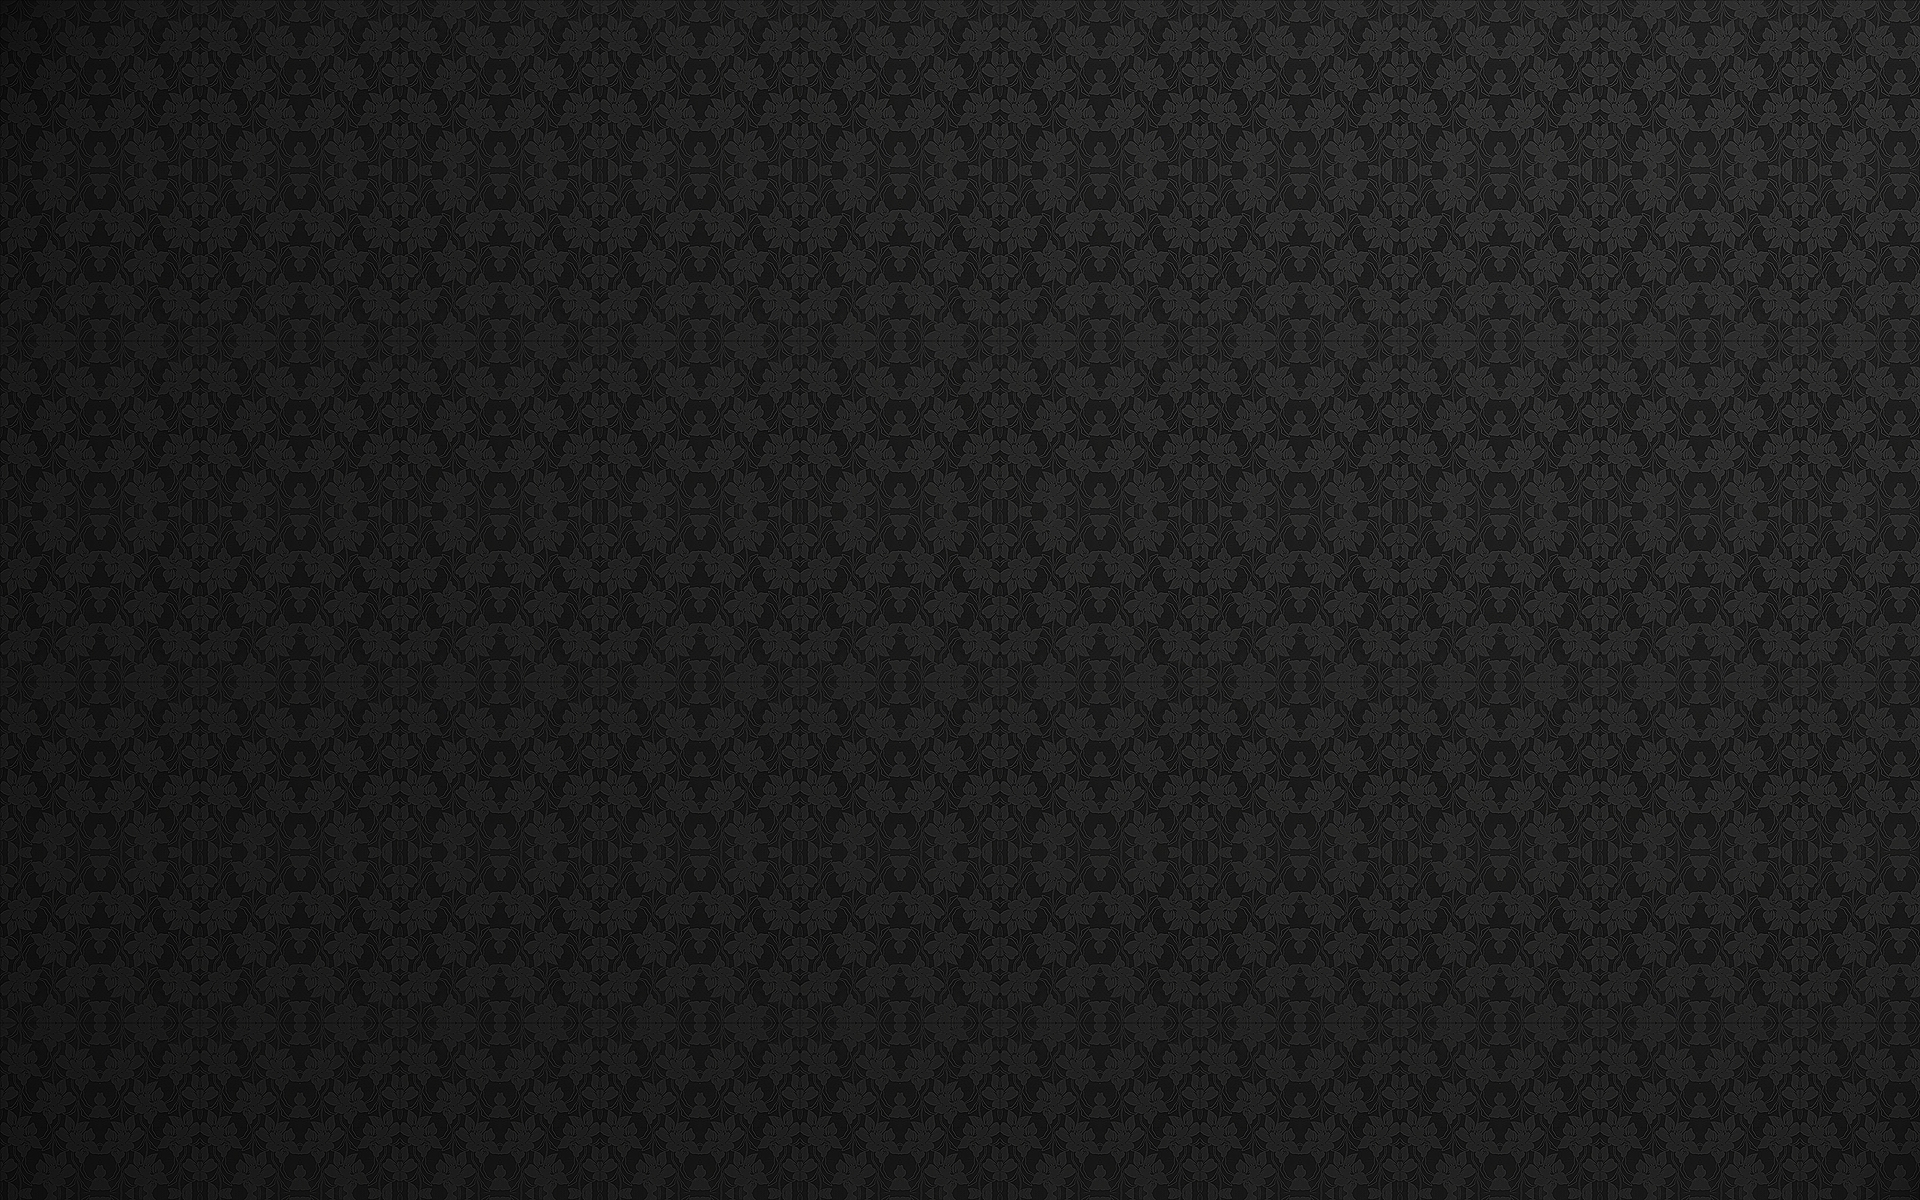  44 Elegant Black Wallpaper  on WallpaperSafari